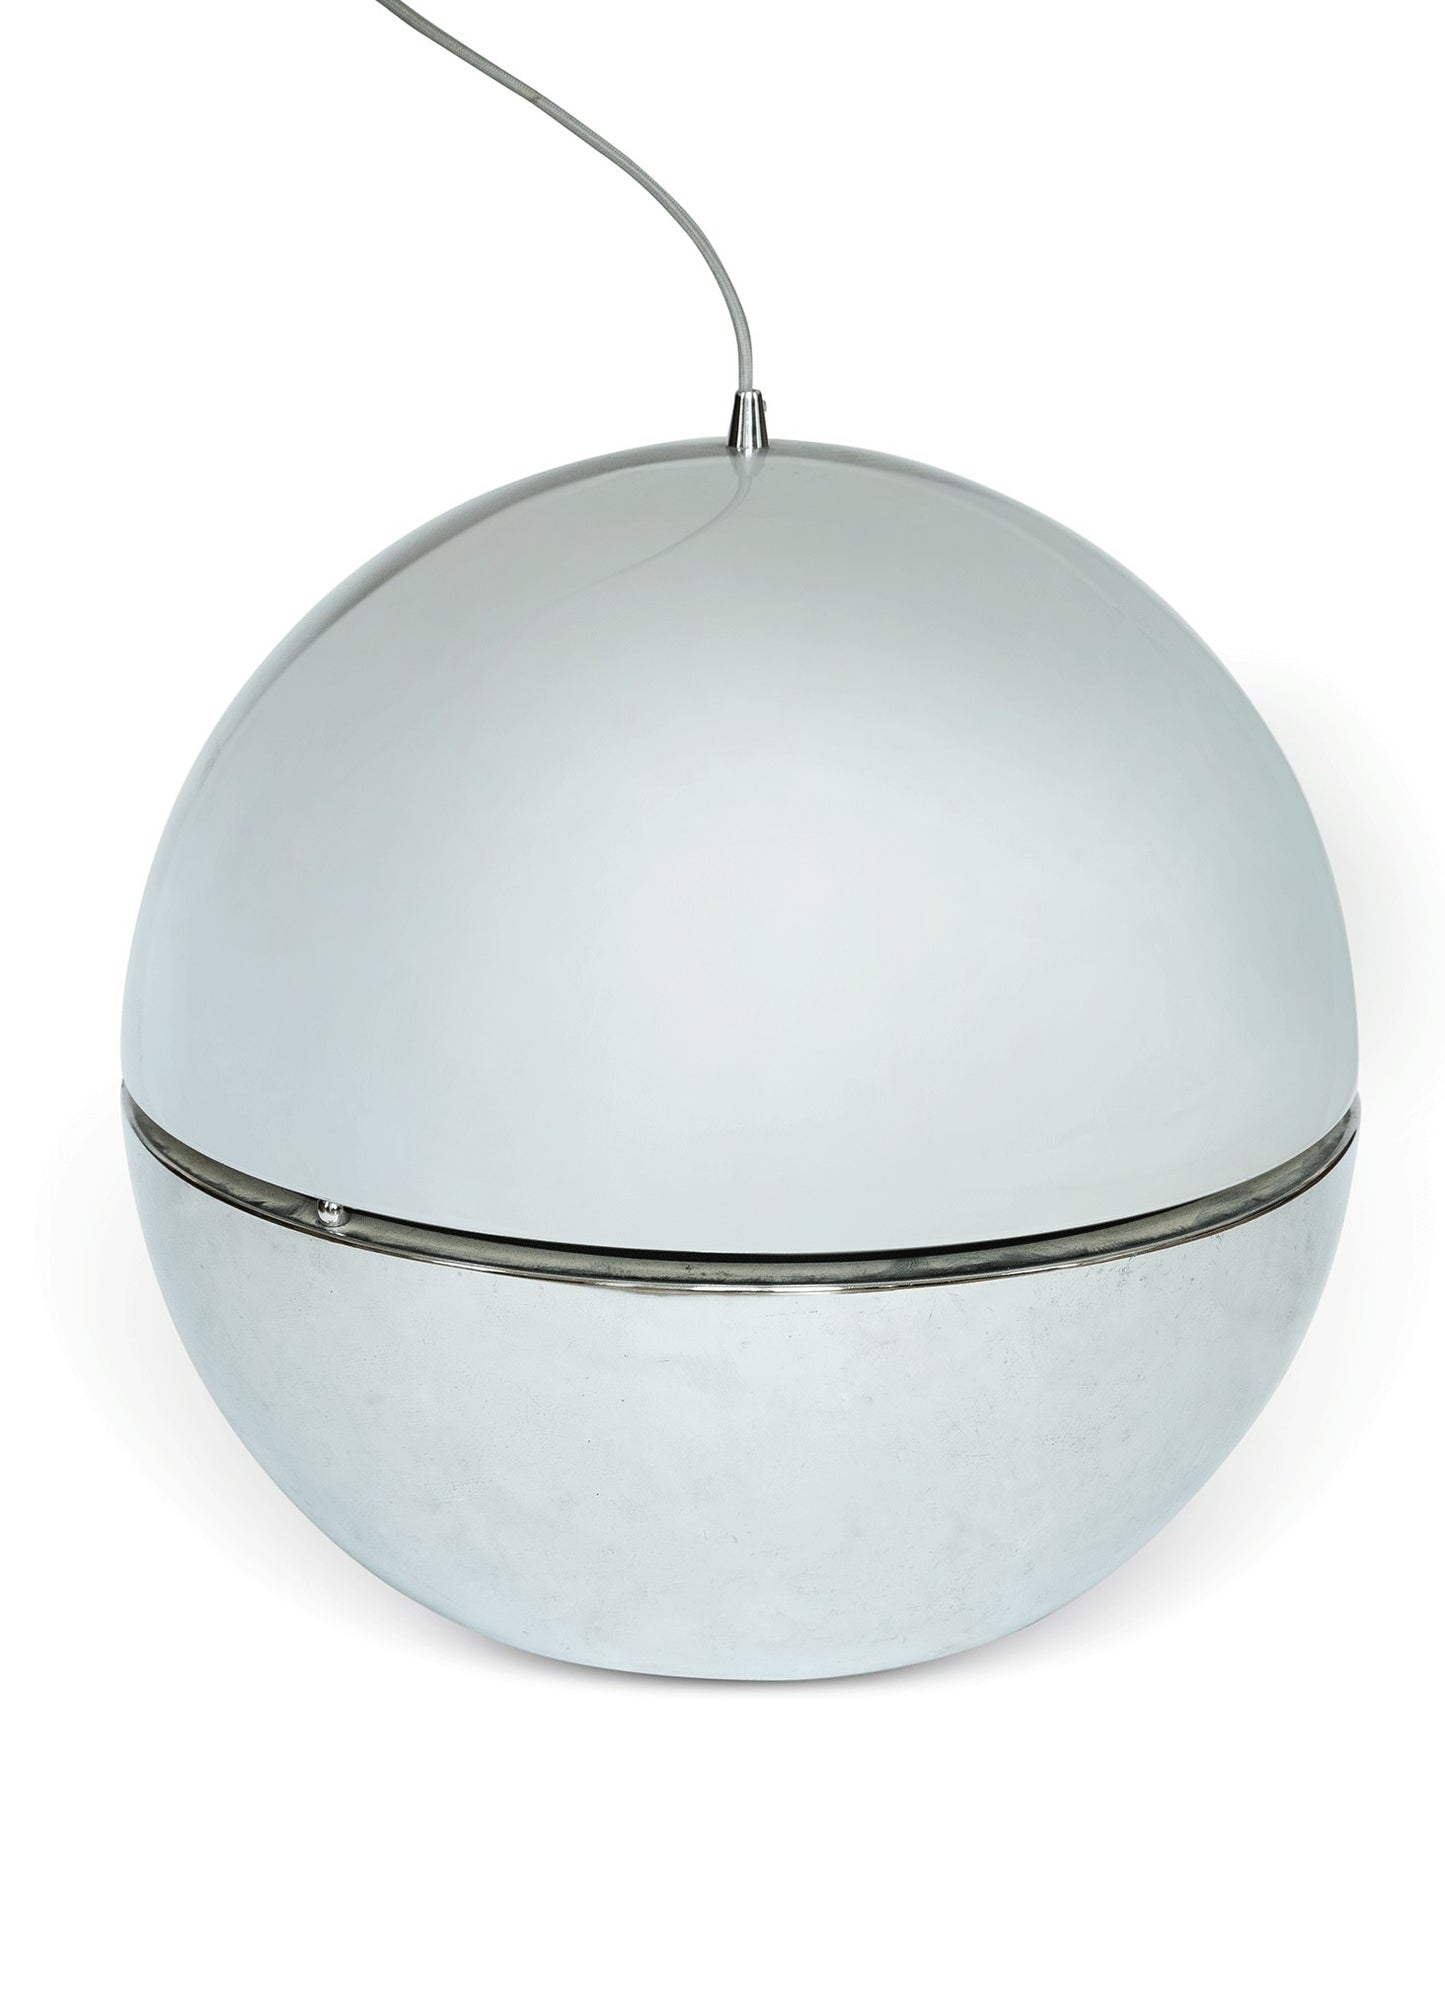 Modernist Chrome Ceiling Suspension Globe Lamp